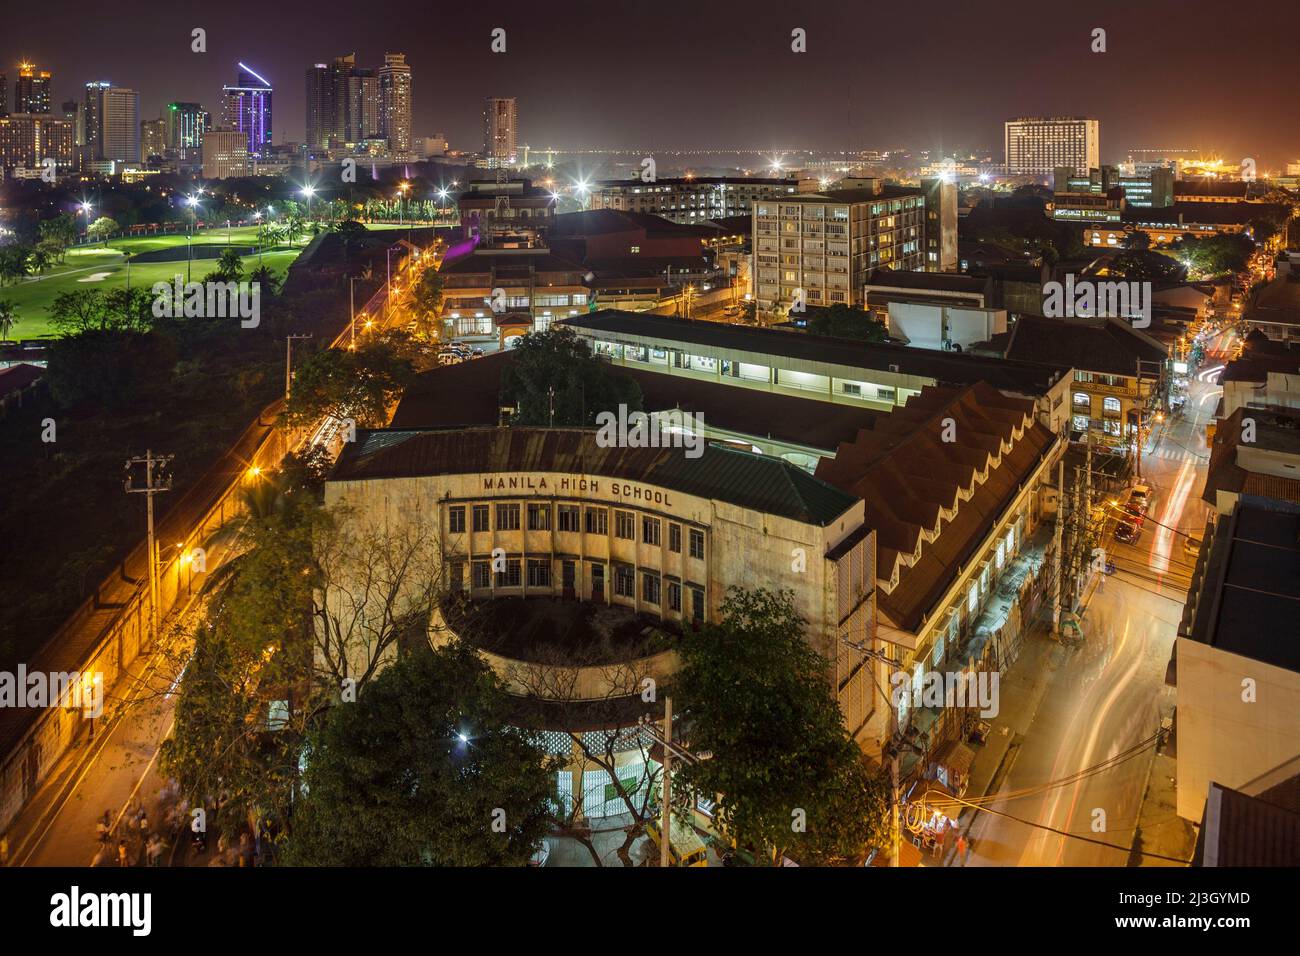 Philippinen, Metro Manila, Intramuros, Blick vom Bayleaf Hotel, erhöhter Blick auf die Manila High School, nachts beleuchtet, Manilas erste öffentliche Schule, eröffnet 1906 Stockfoto